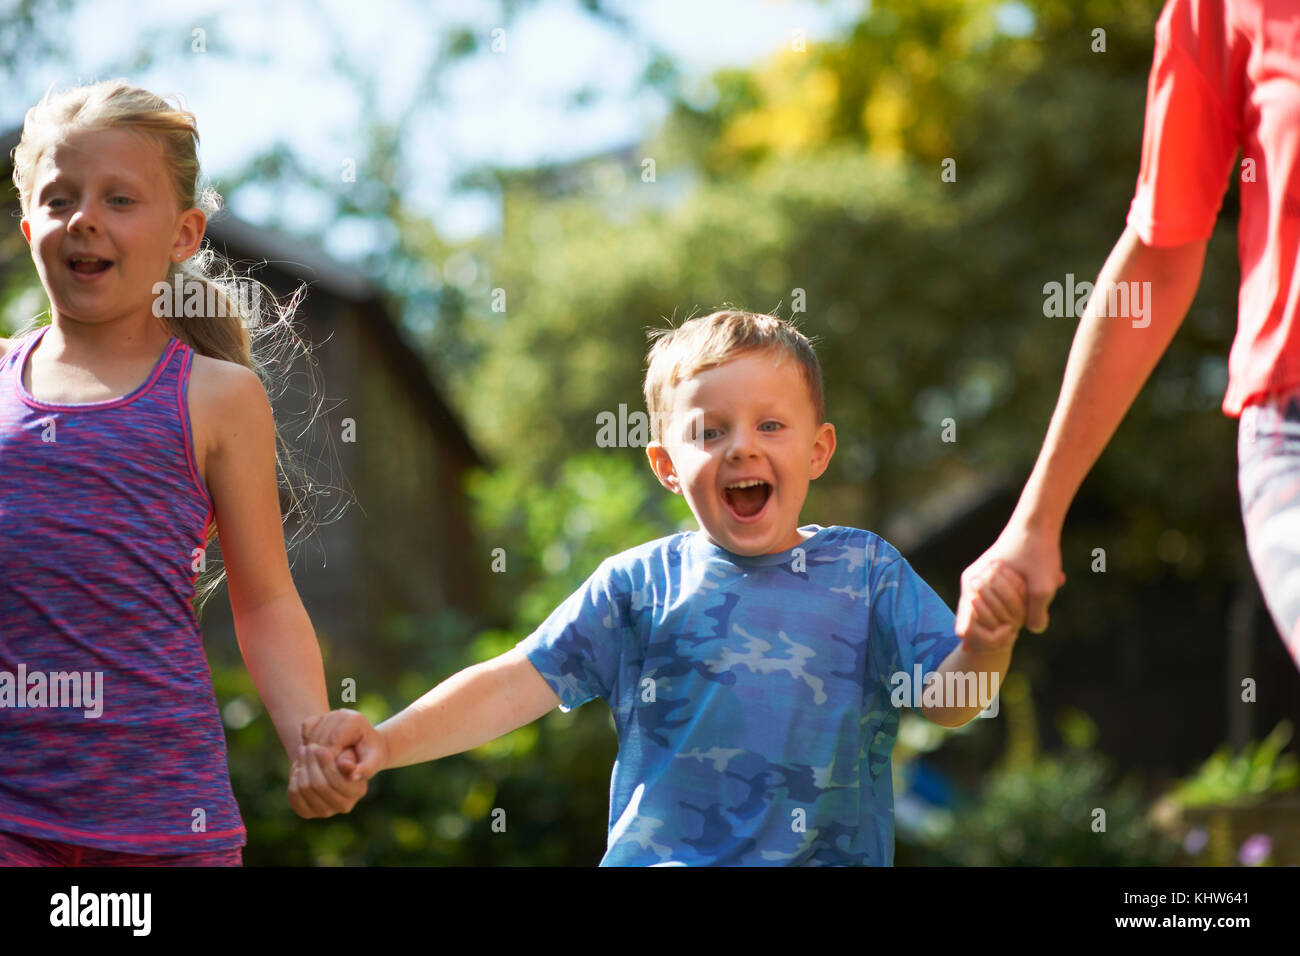 Siblings holding hands running in garden Stock Photo